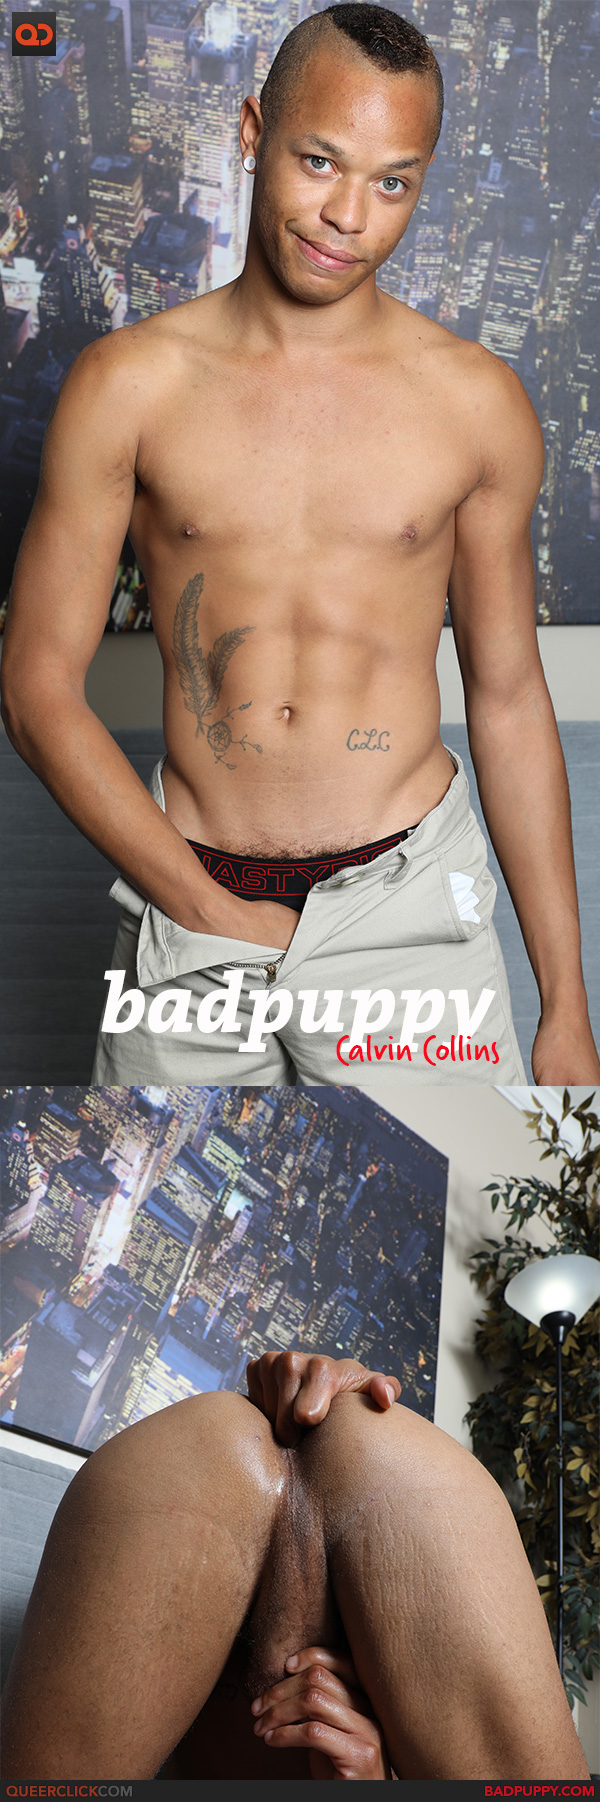 BadPuppy: Calvin Collins